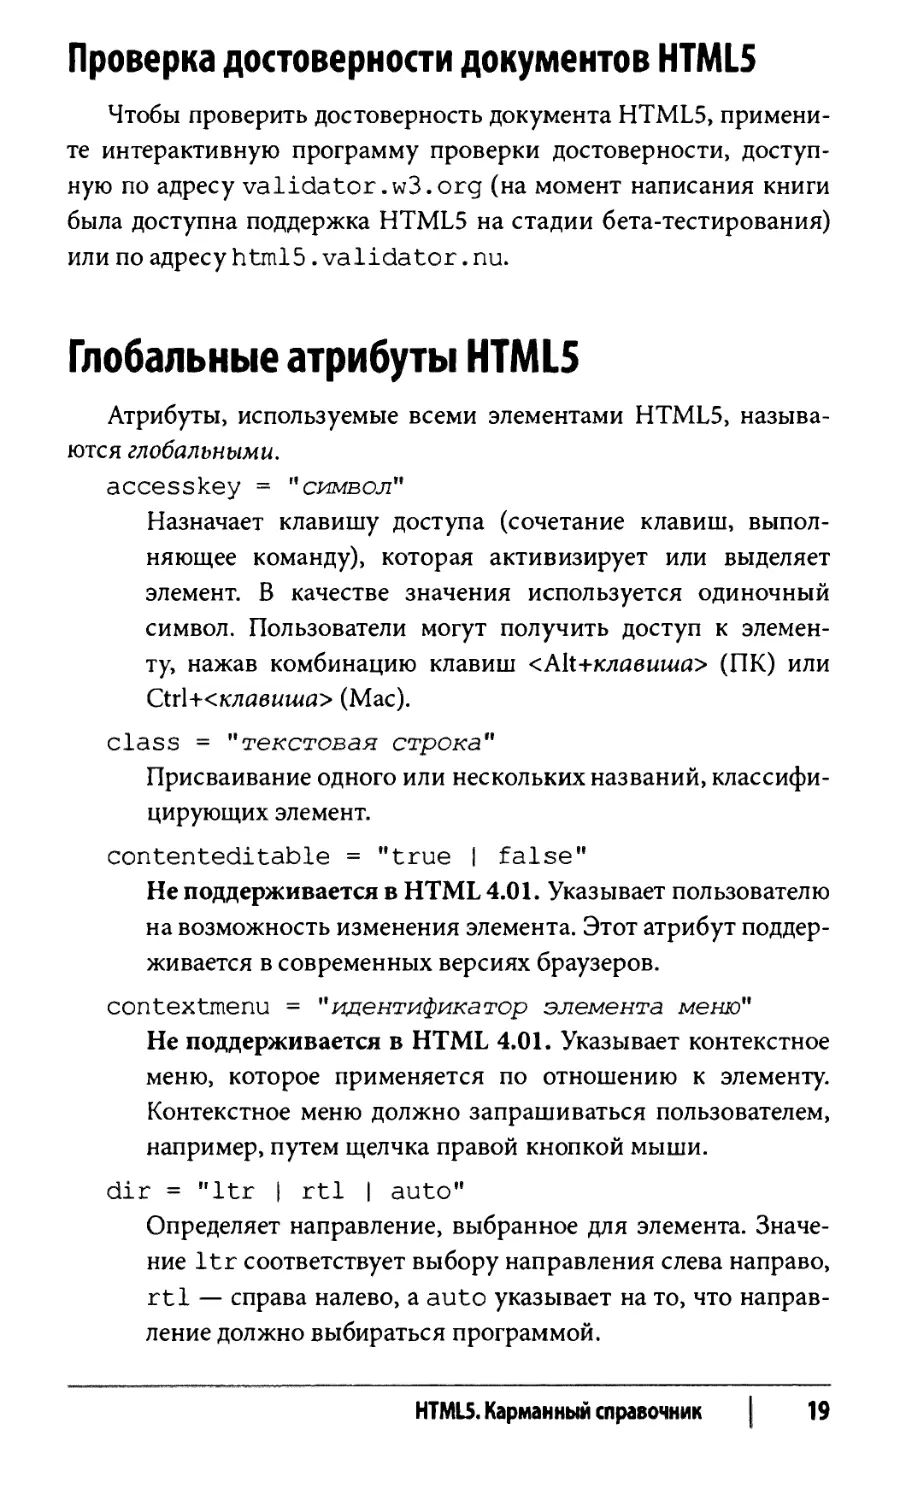 Проверка достоверности документов HTML5
Глобальные атрибуты HTML5